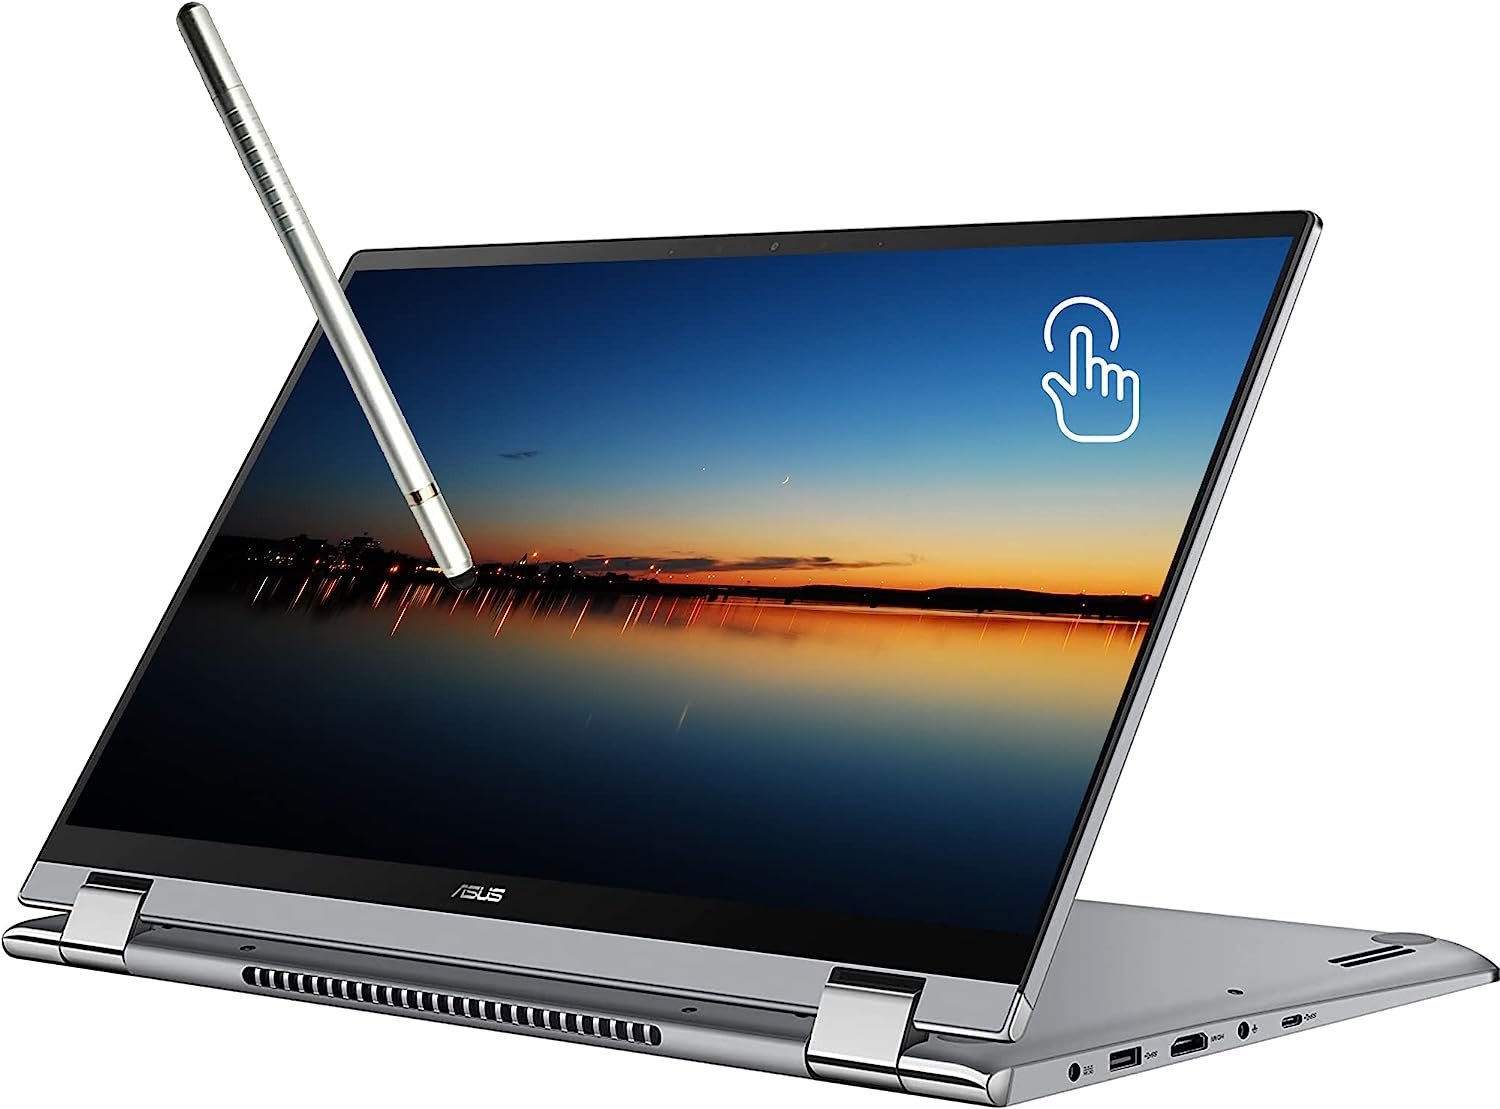 ASUS New Zenbook 15.6" Full HD Touchscreen Laptop